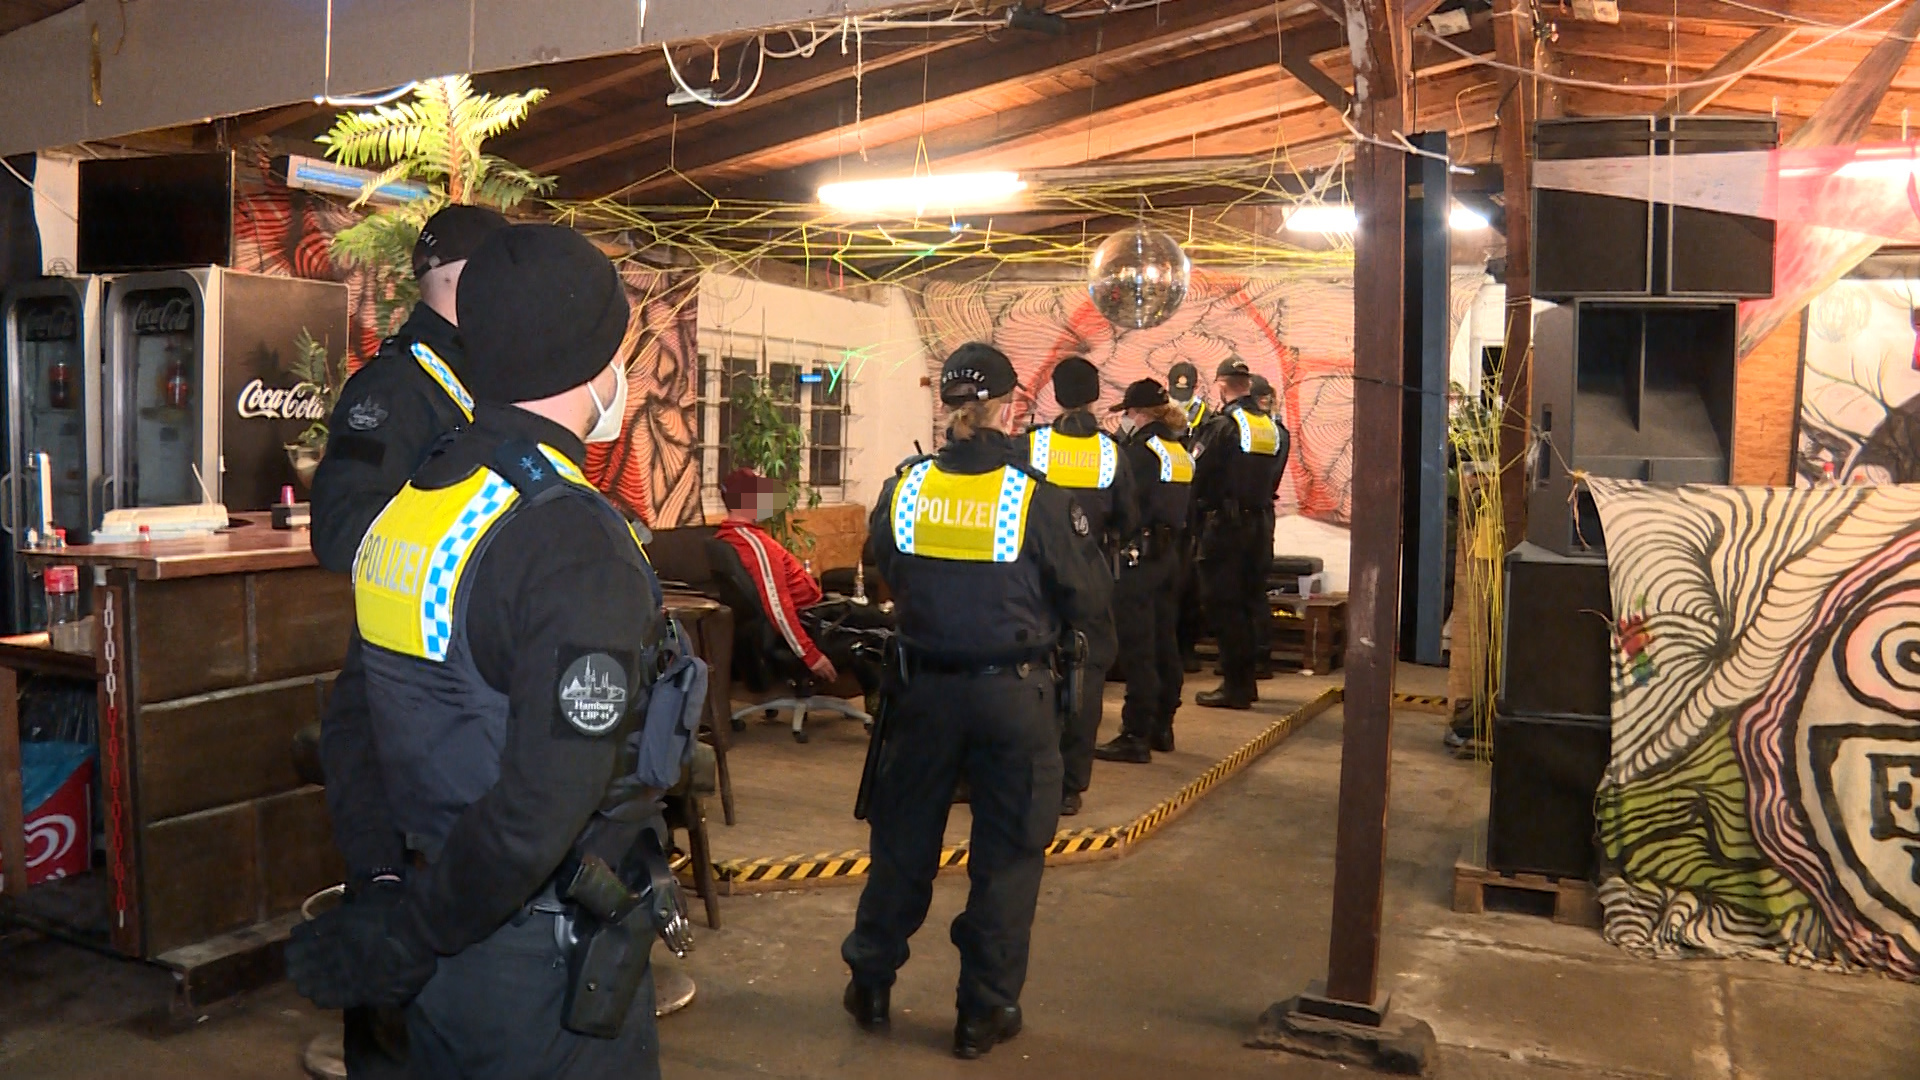 Polizeikräfte kontrollieren Gäste in dem Bootshaus.